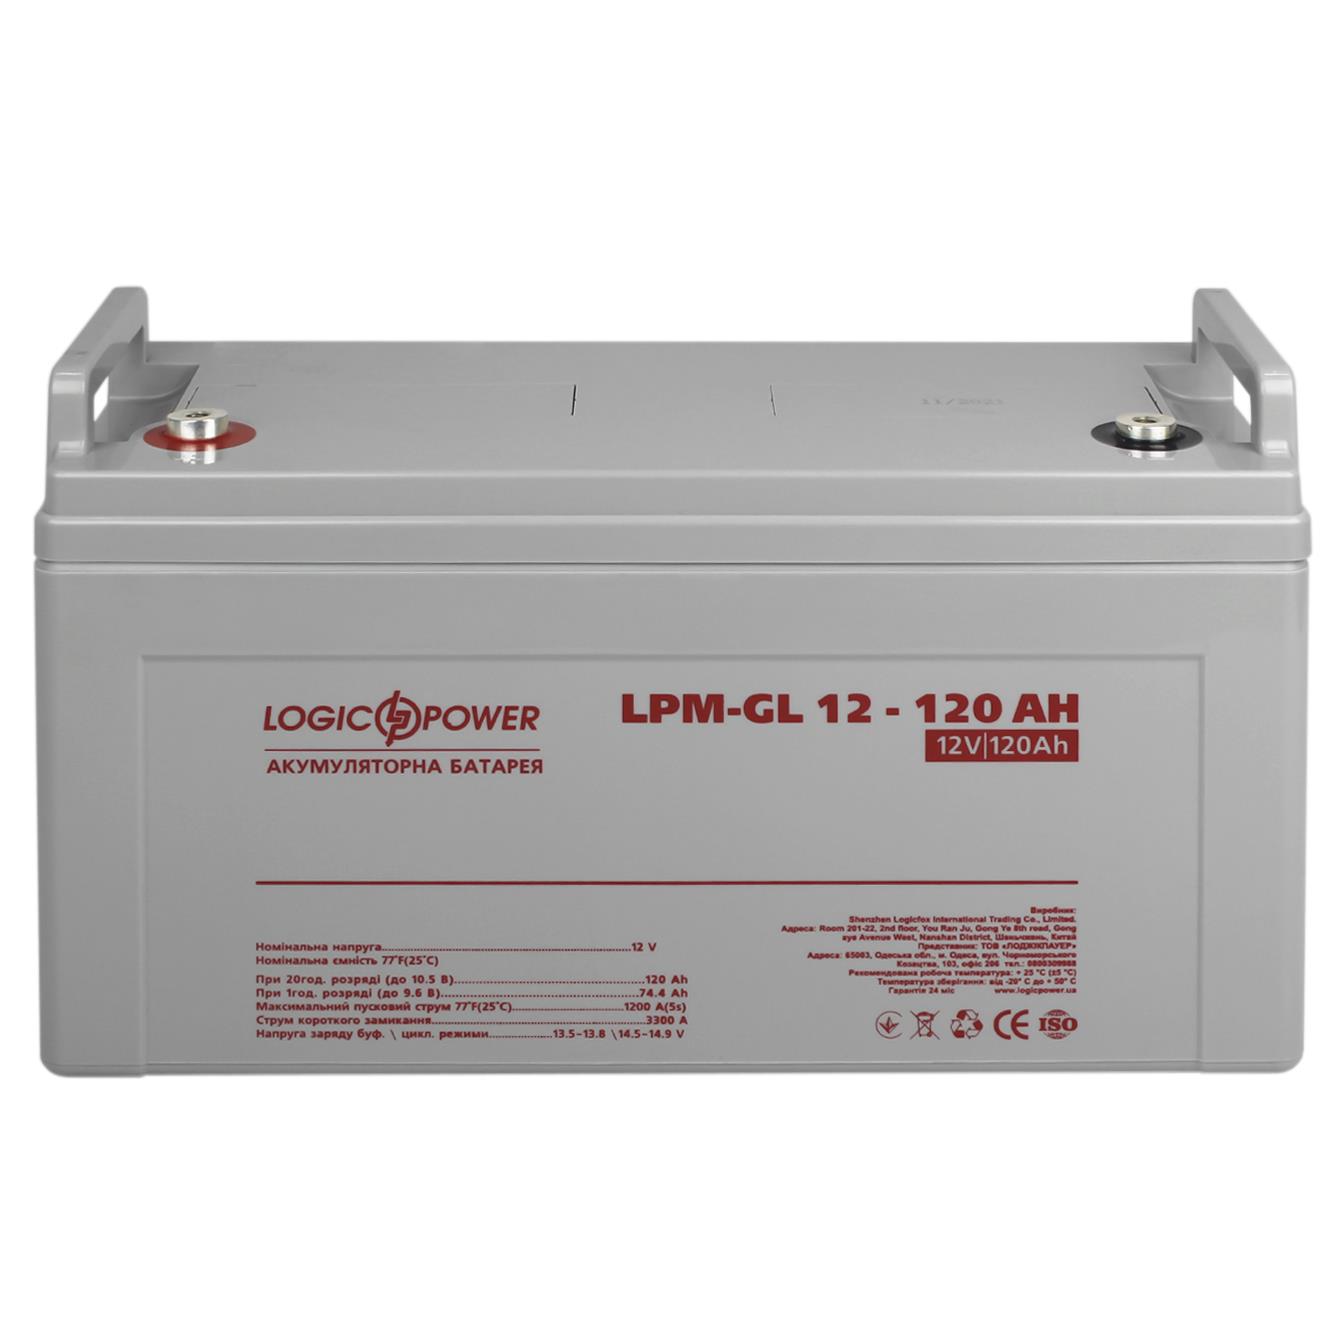 Акумулятор гелевий LogicPower LPM-GL 12V - 120 Ah (3870) відгуки - зображення 5